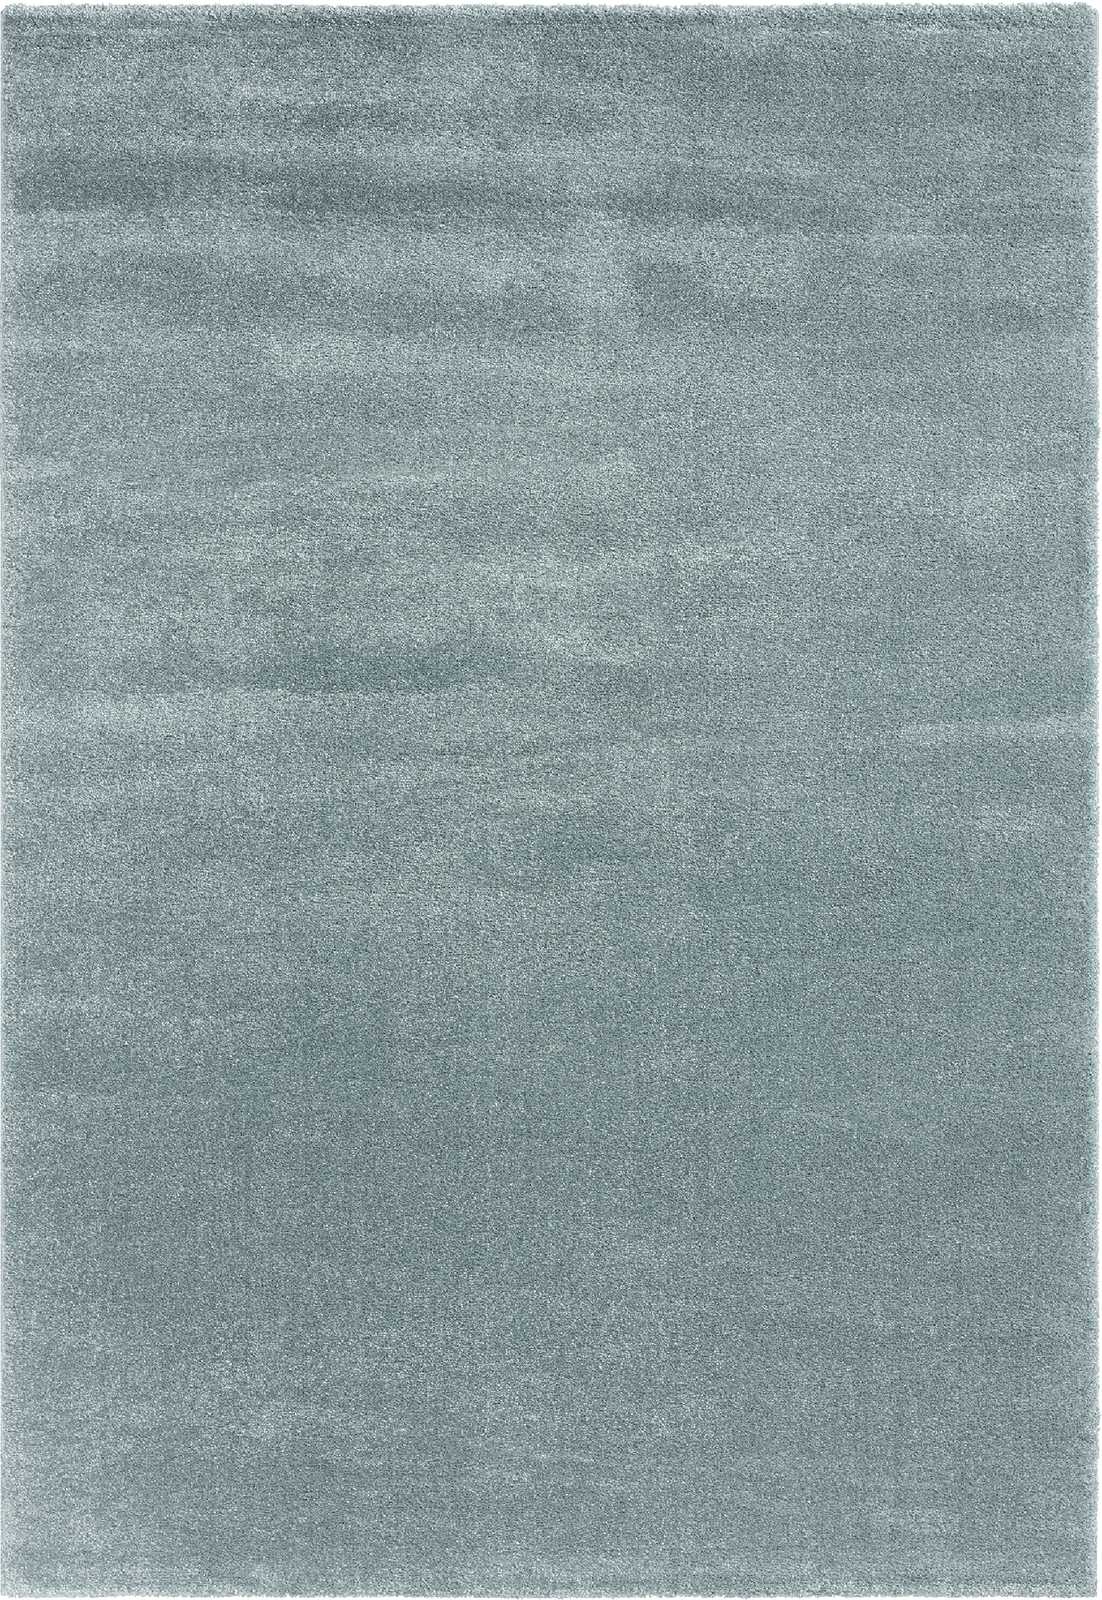             Eenvoudig kortpolig tapijt in blauw - 110 x 60 cm
        